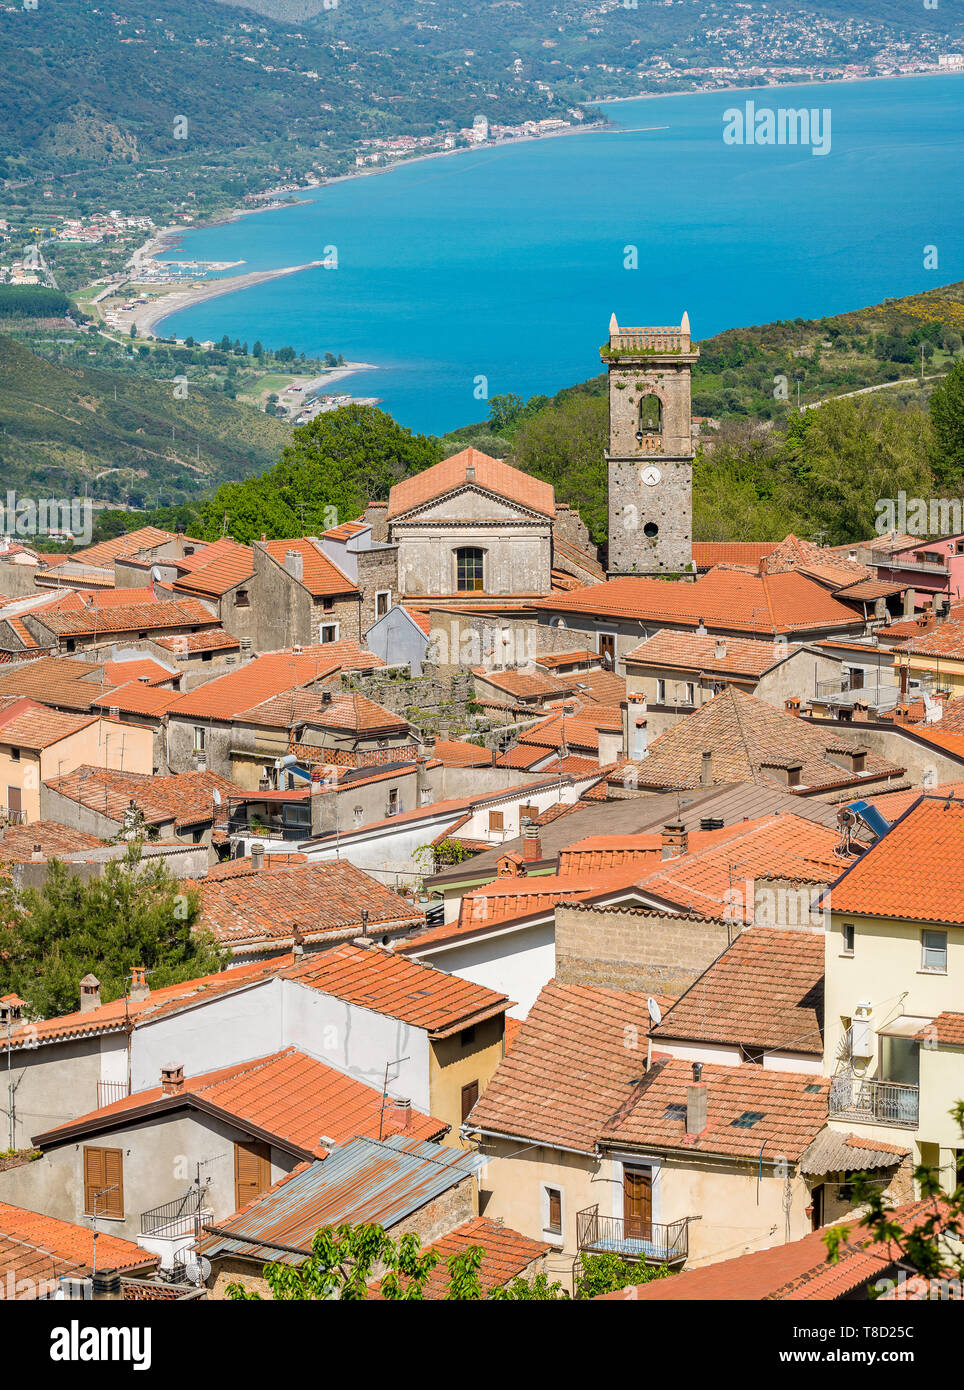 Vue panoramique de San Giovanni a Piro, Province de Salerne, Campanie, Italie. Banque D'Images